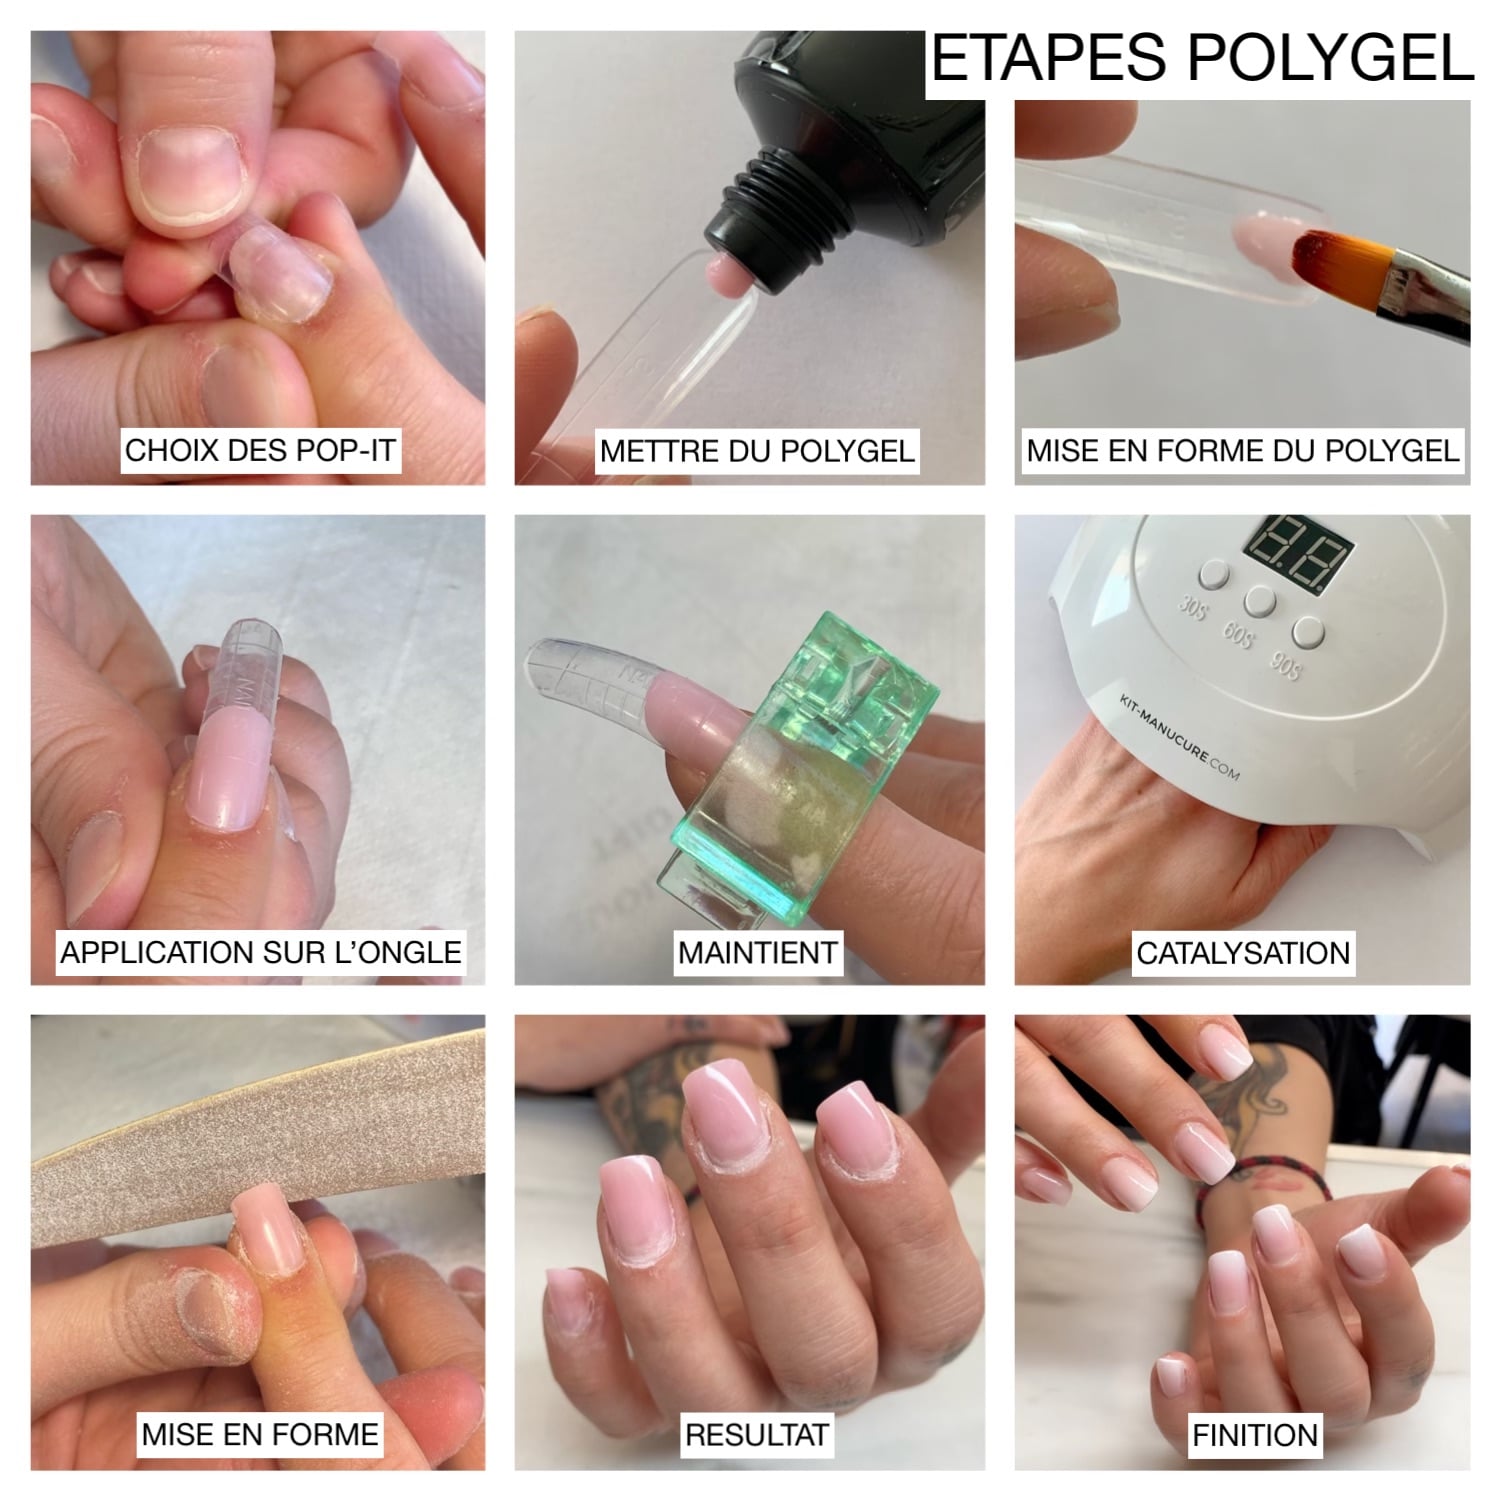 etapes polygel